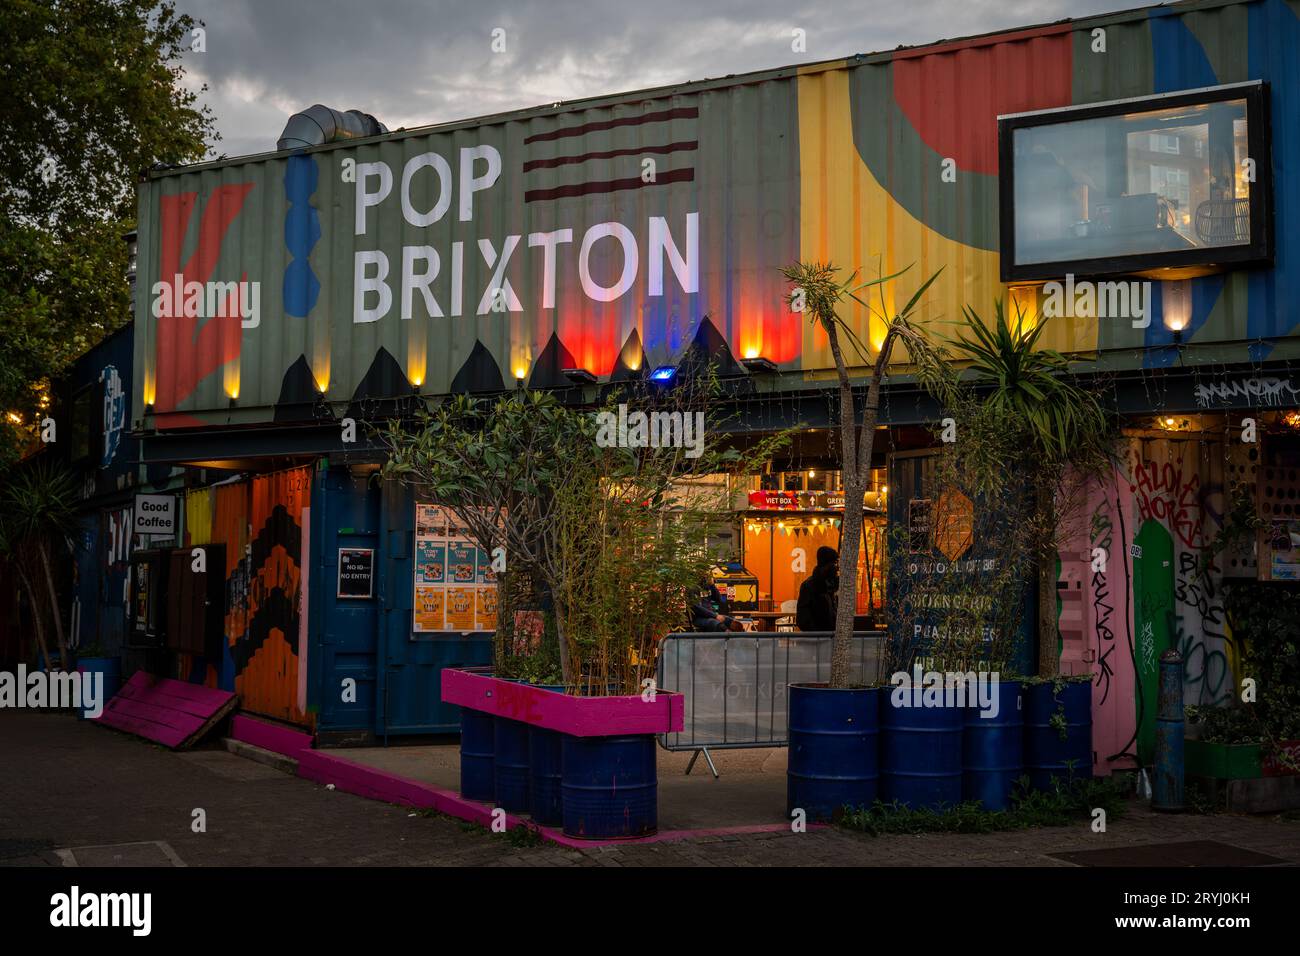 Brixton, Londra, Regno Unito: Pop Brixton, uno spazio comunitario che supporta ristoranti, bar e aziende locali. Realizzati con contenitori per spedizioni. Foto Stock